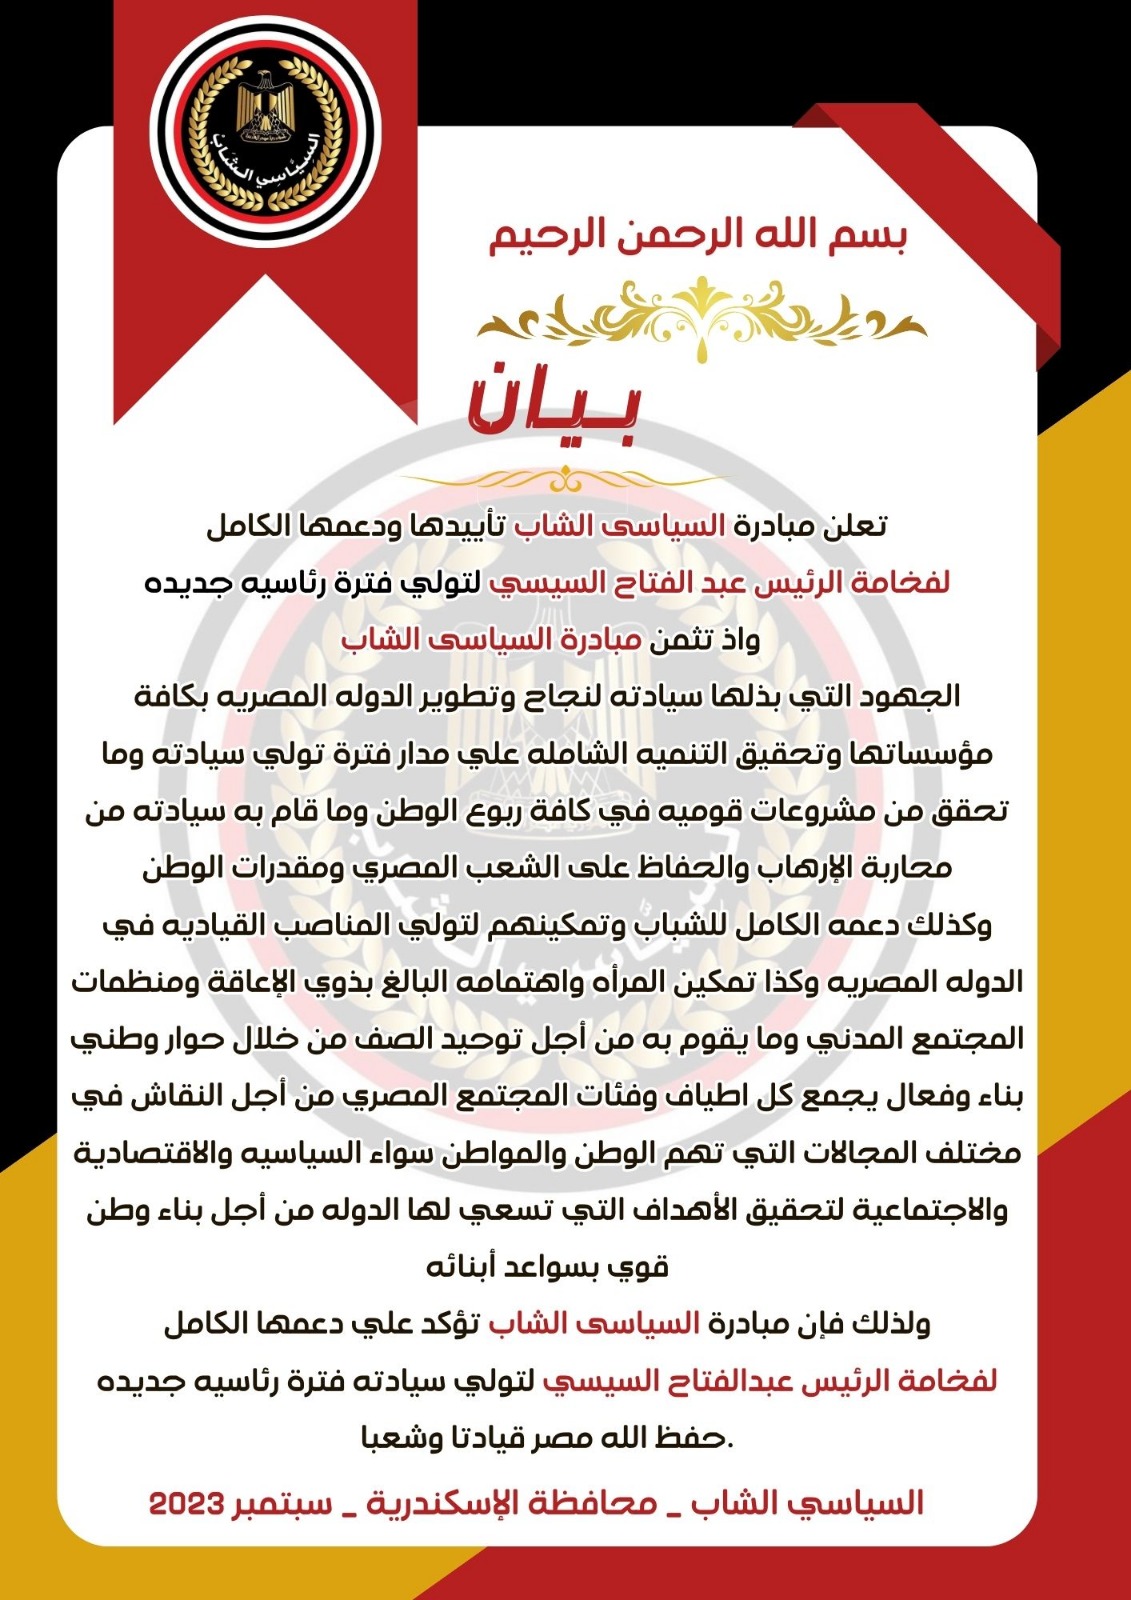 "مبادرة السياسي الشاب" بالاسكندرية تعلن دعمها الرئيس عبد الفتاح السيسي 